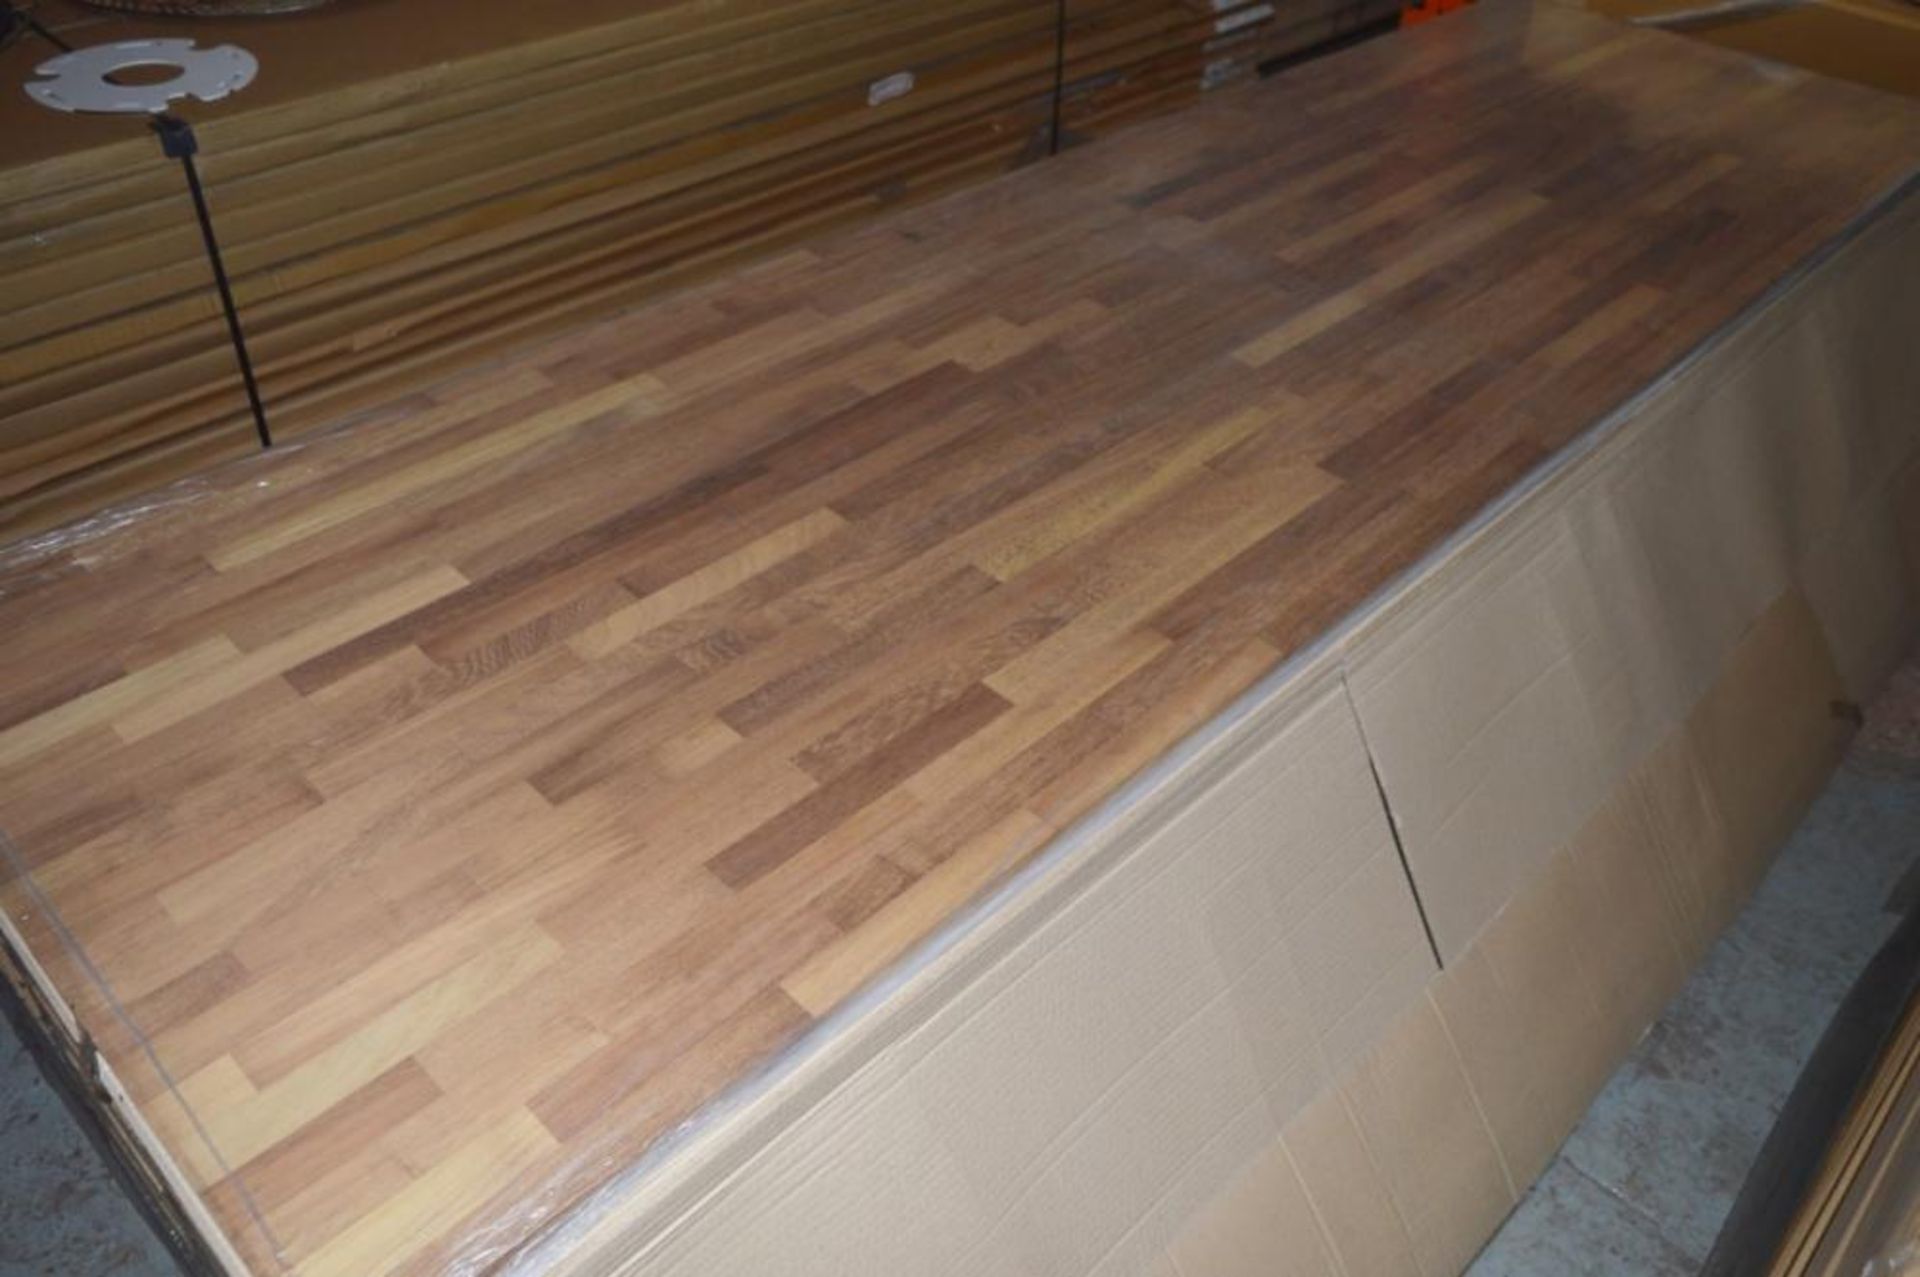 1 x Solid Wood Kitchen Worktop - IROKO - Iroko Blockwood Kitchen Worktop - Size: 3000 x 900 x 32mm - - Image 2 of 3